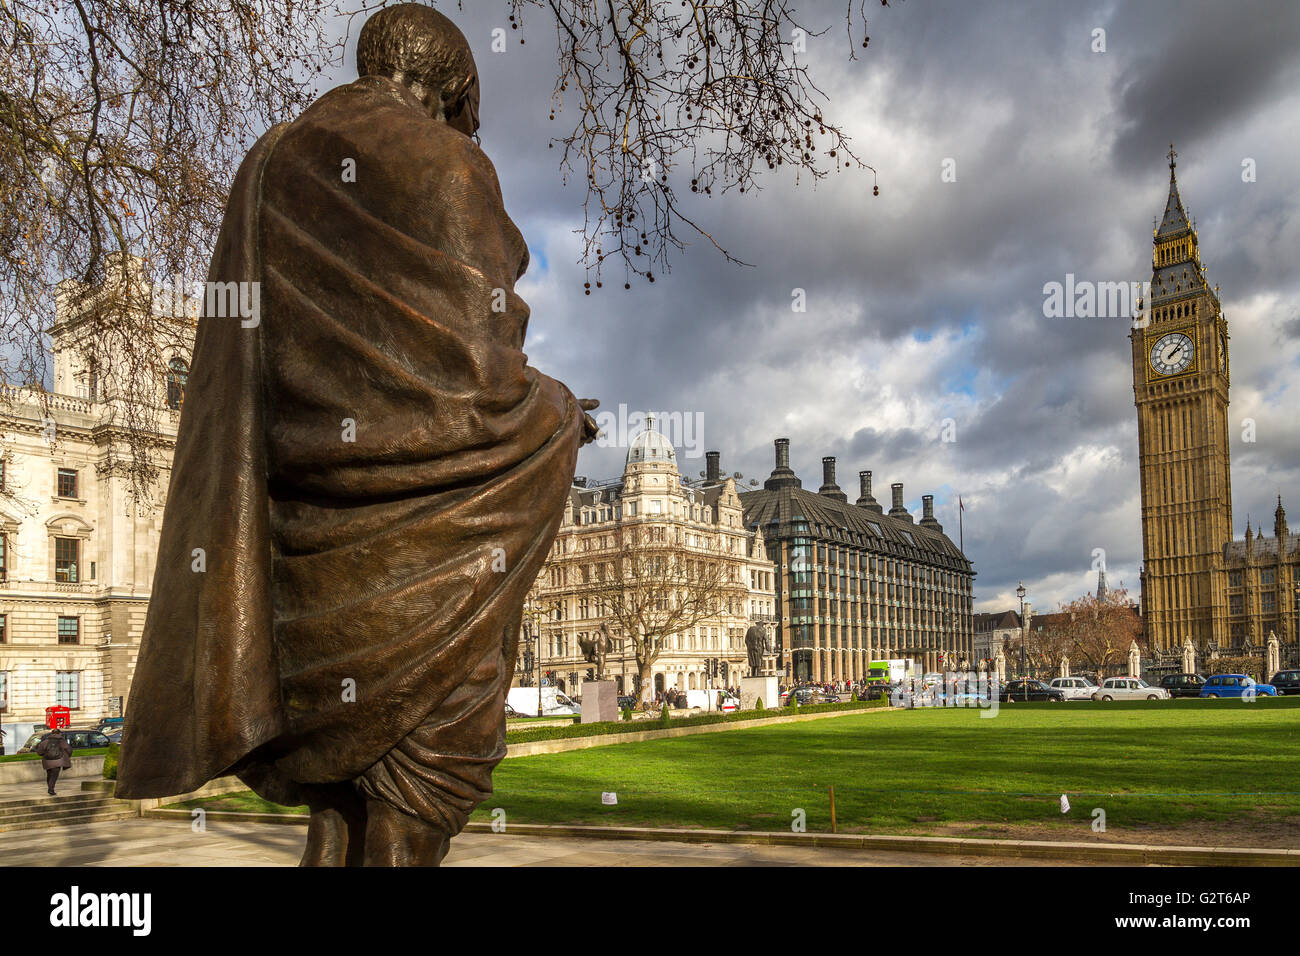 La statua in bronzo del Mahatma Gandhi dallo scultore Philip Jackson in piazza del Parlamento, Westminster, London, Regno Unito Foto Stock